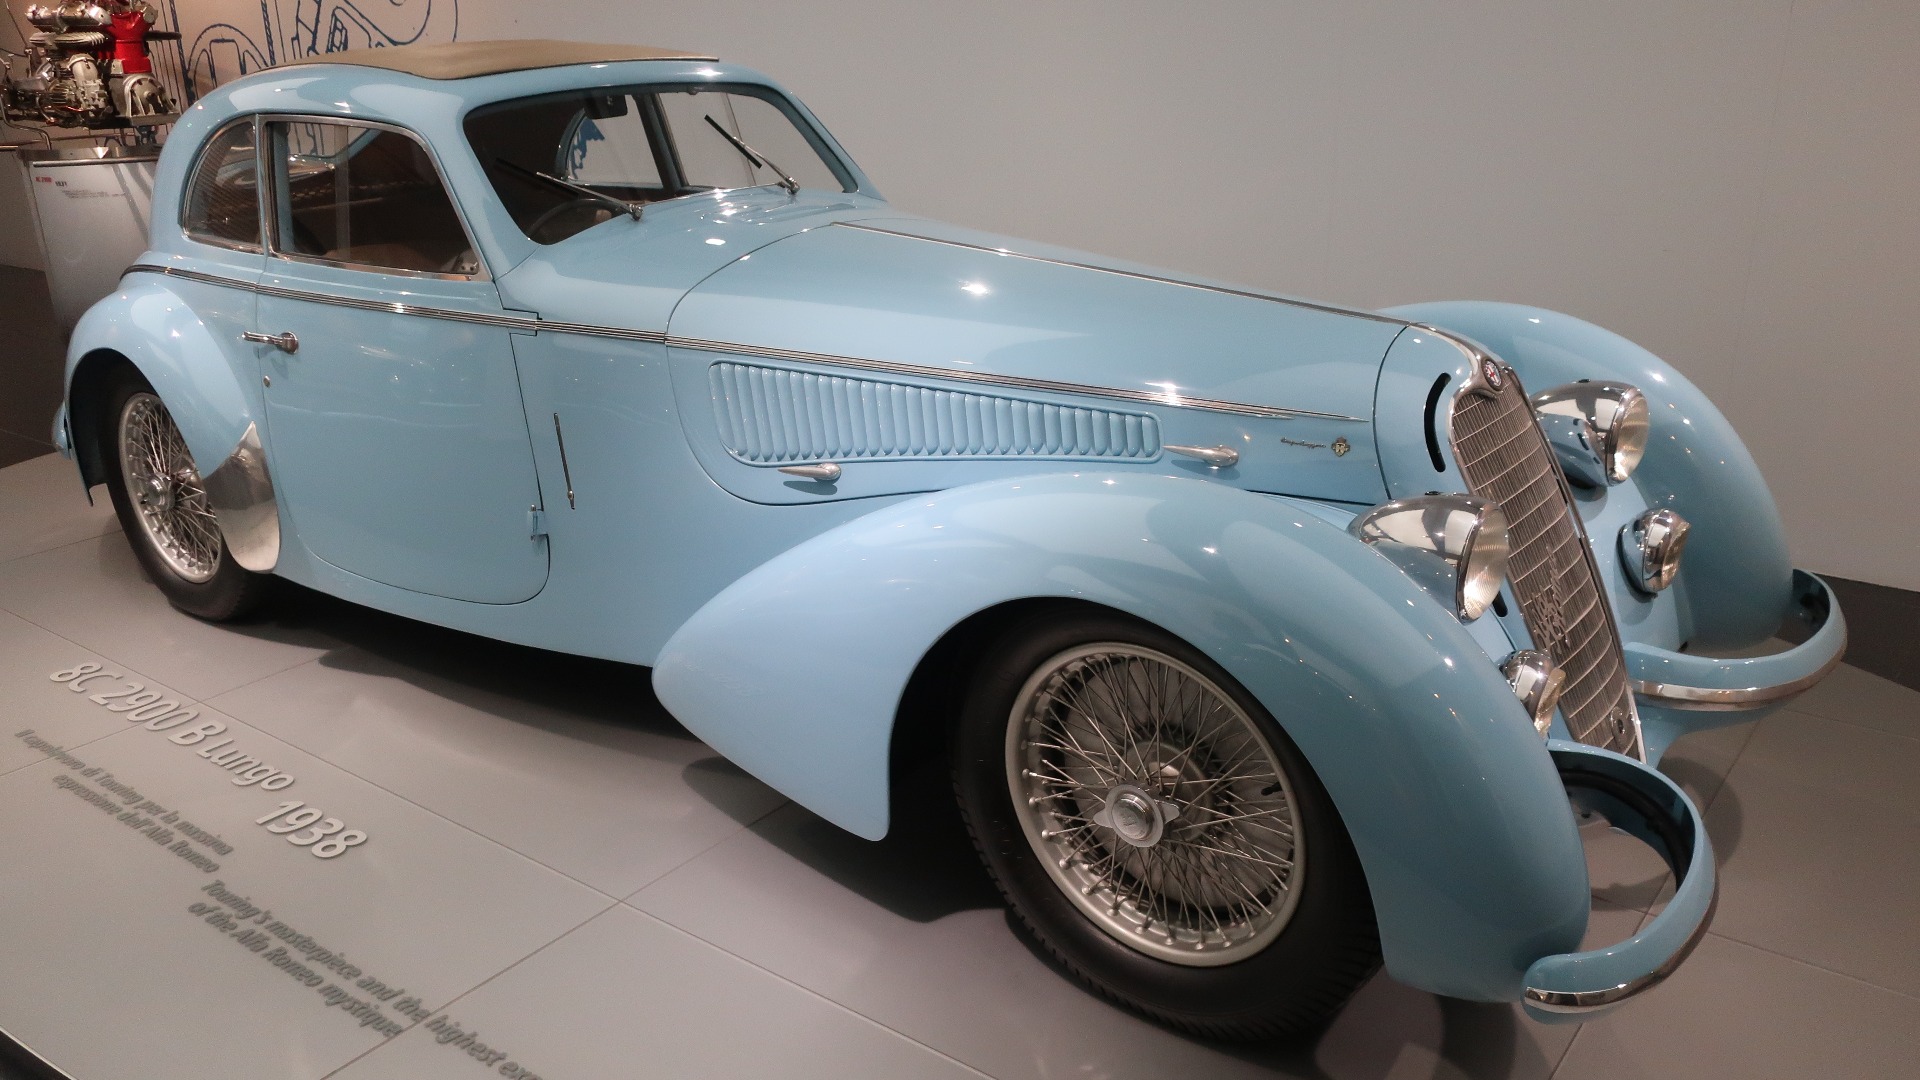 En spektakulært vakker 8C 2900 B Lungo fra 1938. Som det står skrevet på standen, Touring’s masterpiece and the highest expression of the Alfa Romeo mystique.